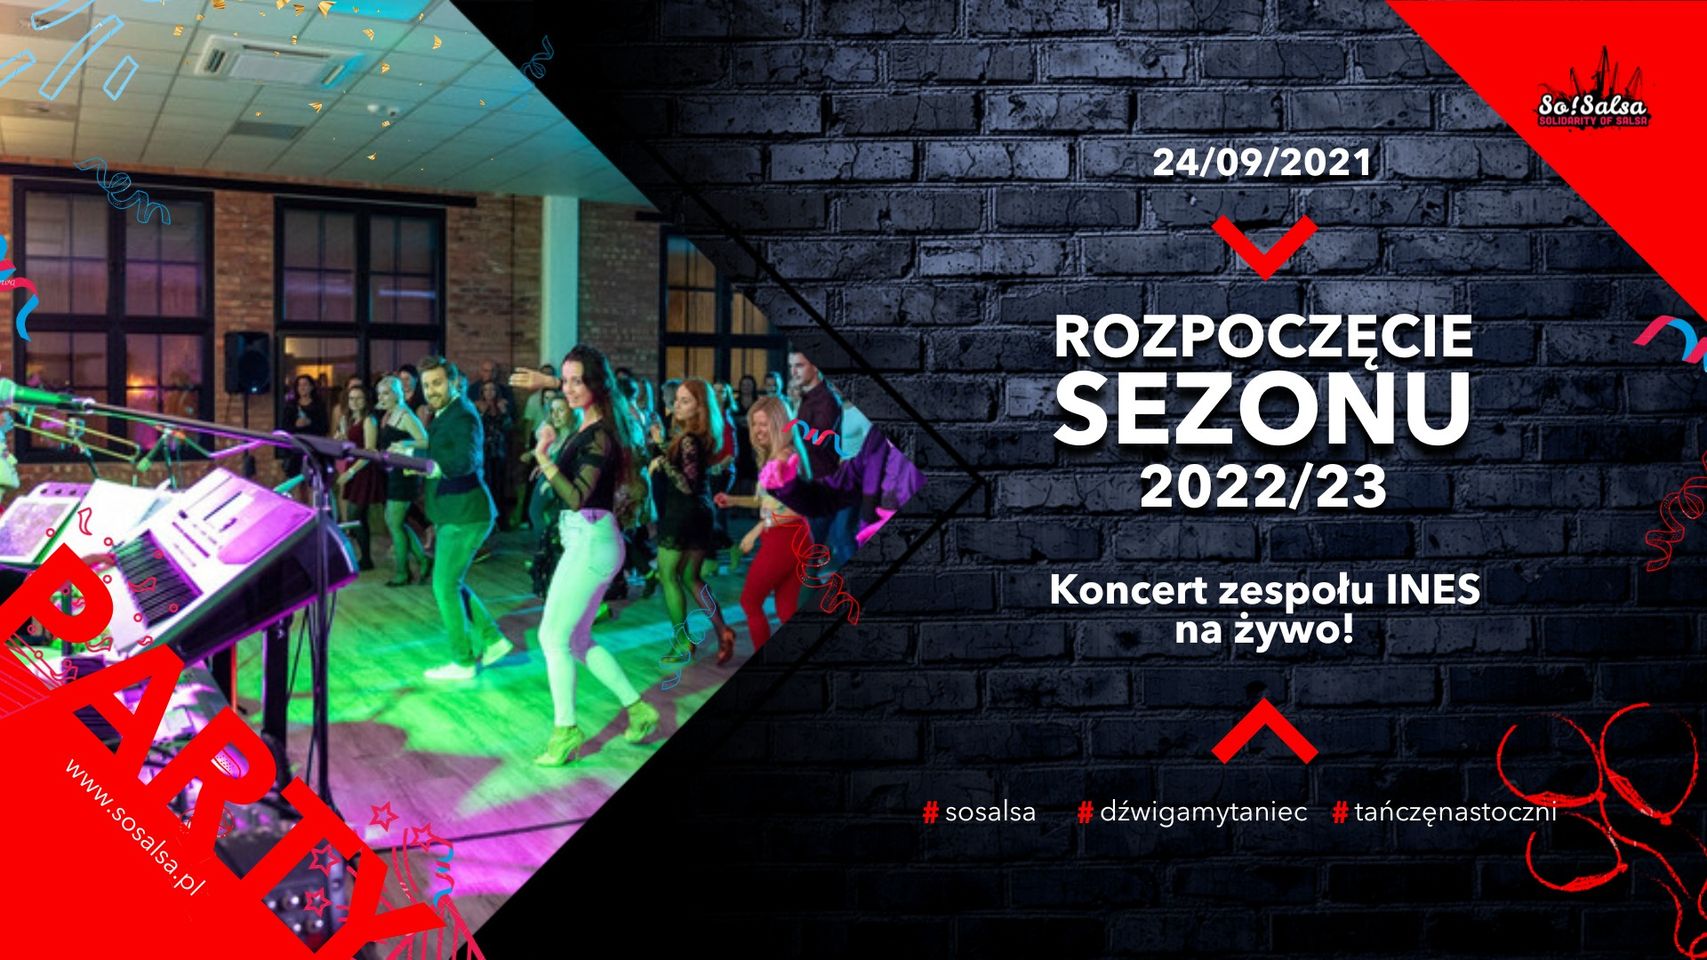 Otwarcie sezonu 2022/23 SoSalsa z koncertem Ines na żywo!